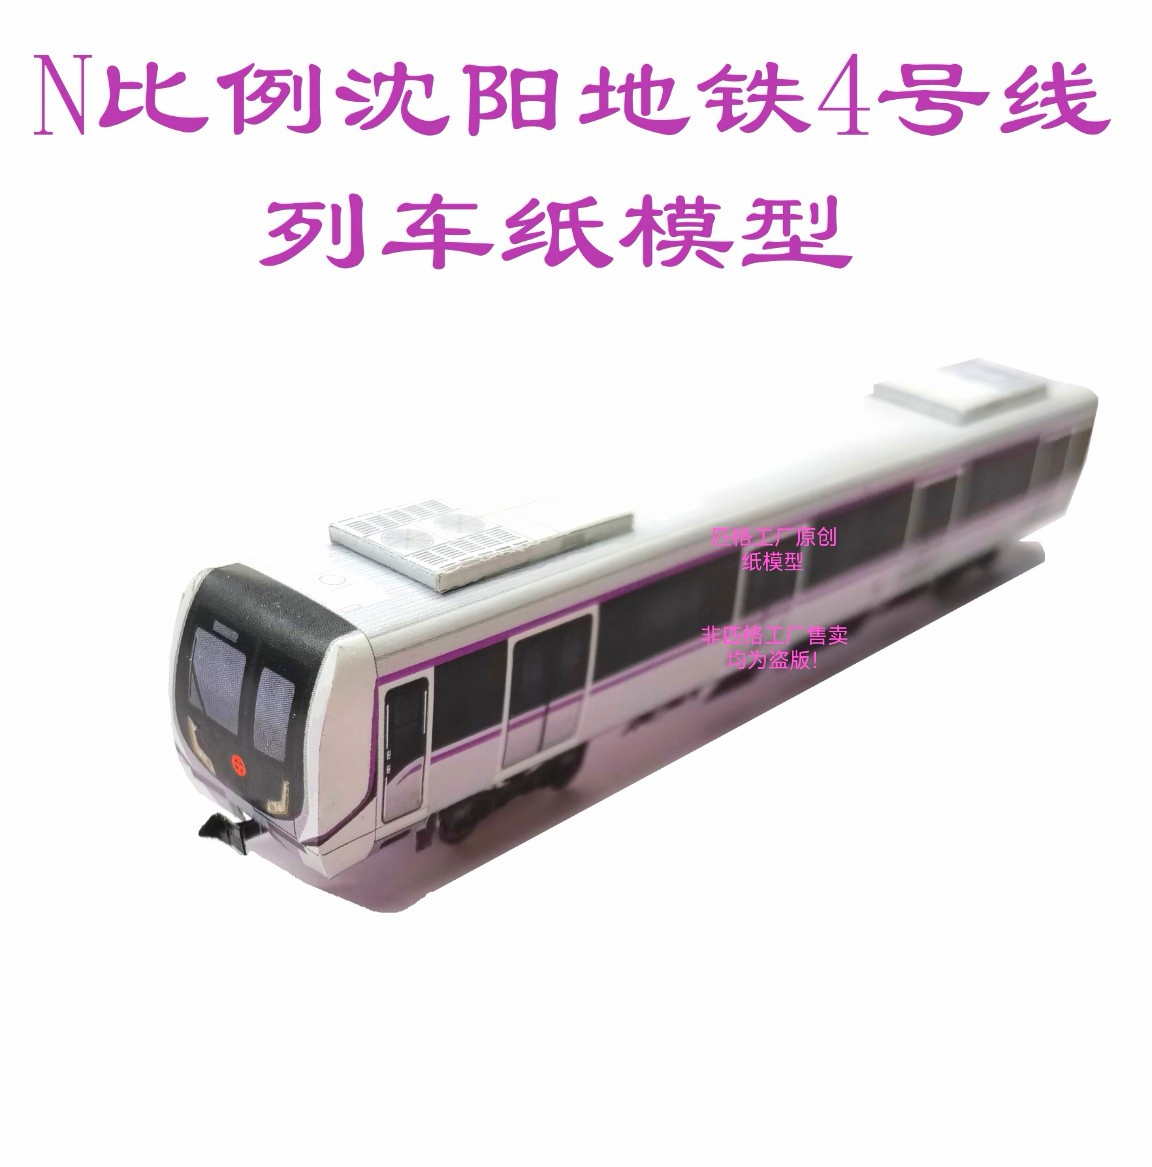 匹格工厂n比例沈阳地铁4号线列车模型3D纸模DIY手工火车地铁模型